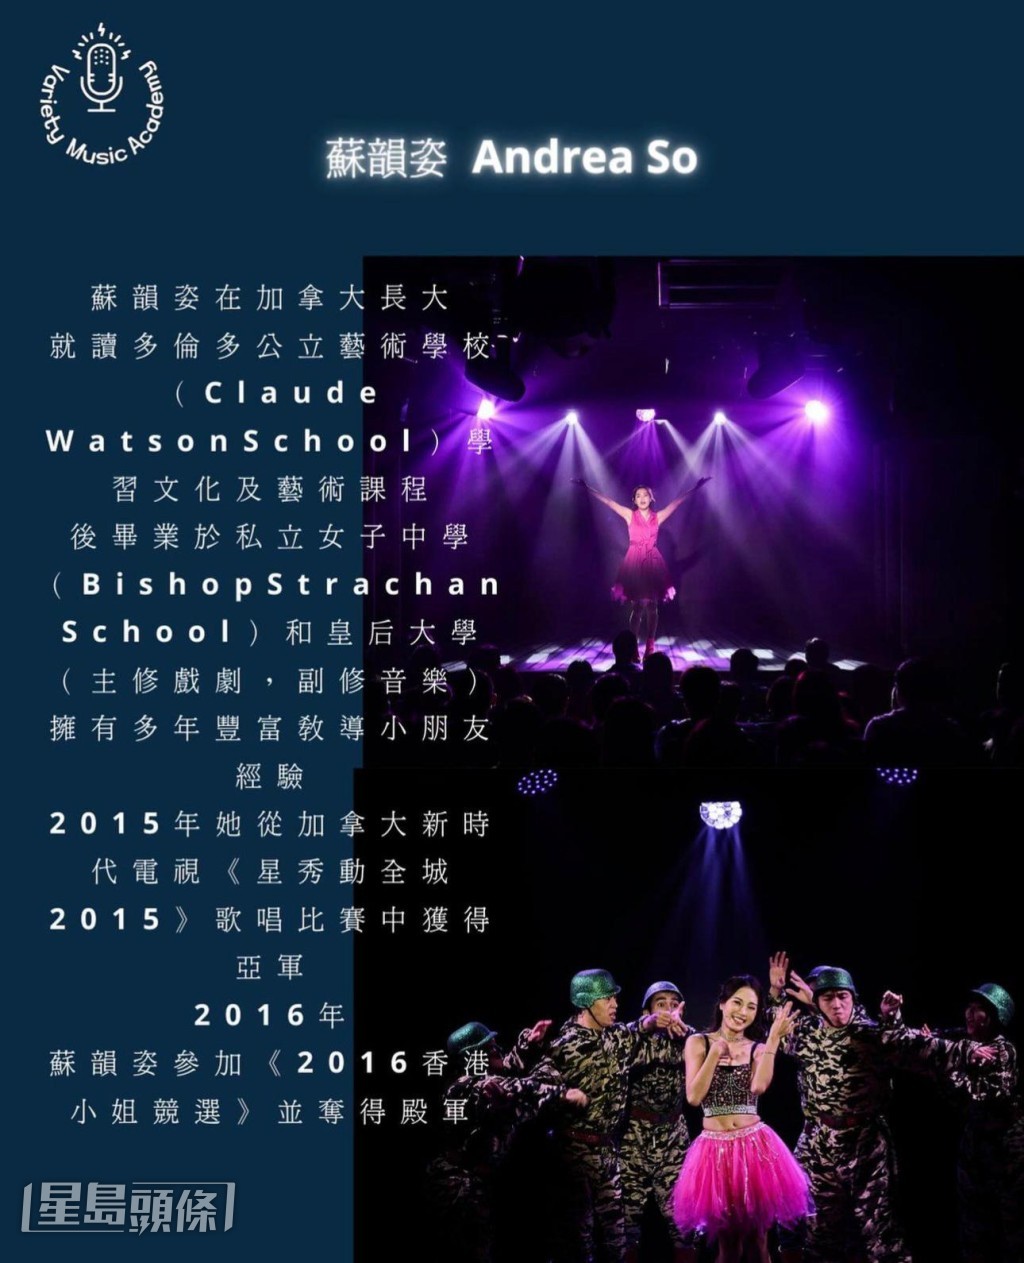 蘇韻姿離巢不足一個月，在社交網貼出宣傳海報，透露將加盟謝東閔和吳業坤的音樂學院做老師，教授音樂劇兒童歌唱班。